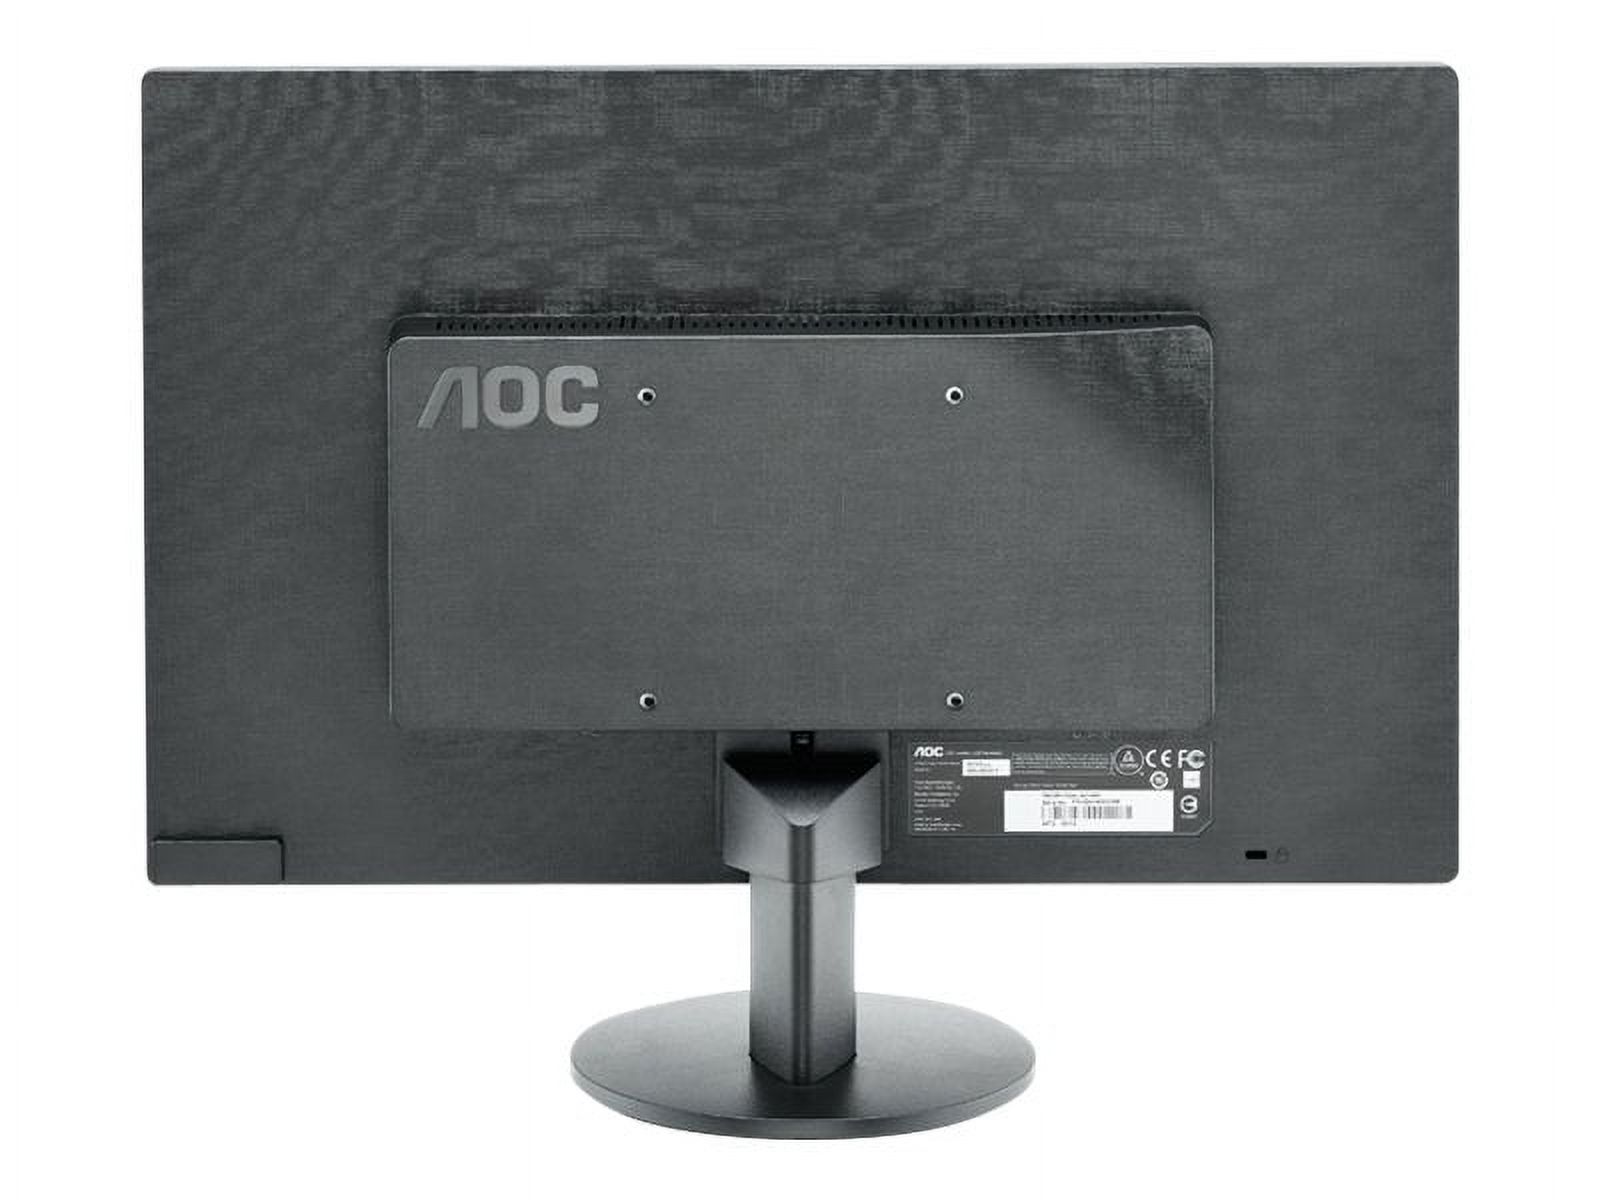 AOC E970SWN - LED monitor - 18.5" - 1366 x 768 @ 60 Hz - TN - 200 cd/m������ - 700:1 - 5 ms - VGA - black - image 4 of 6